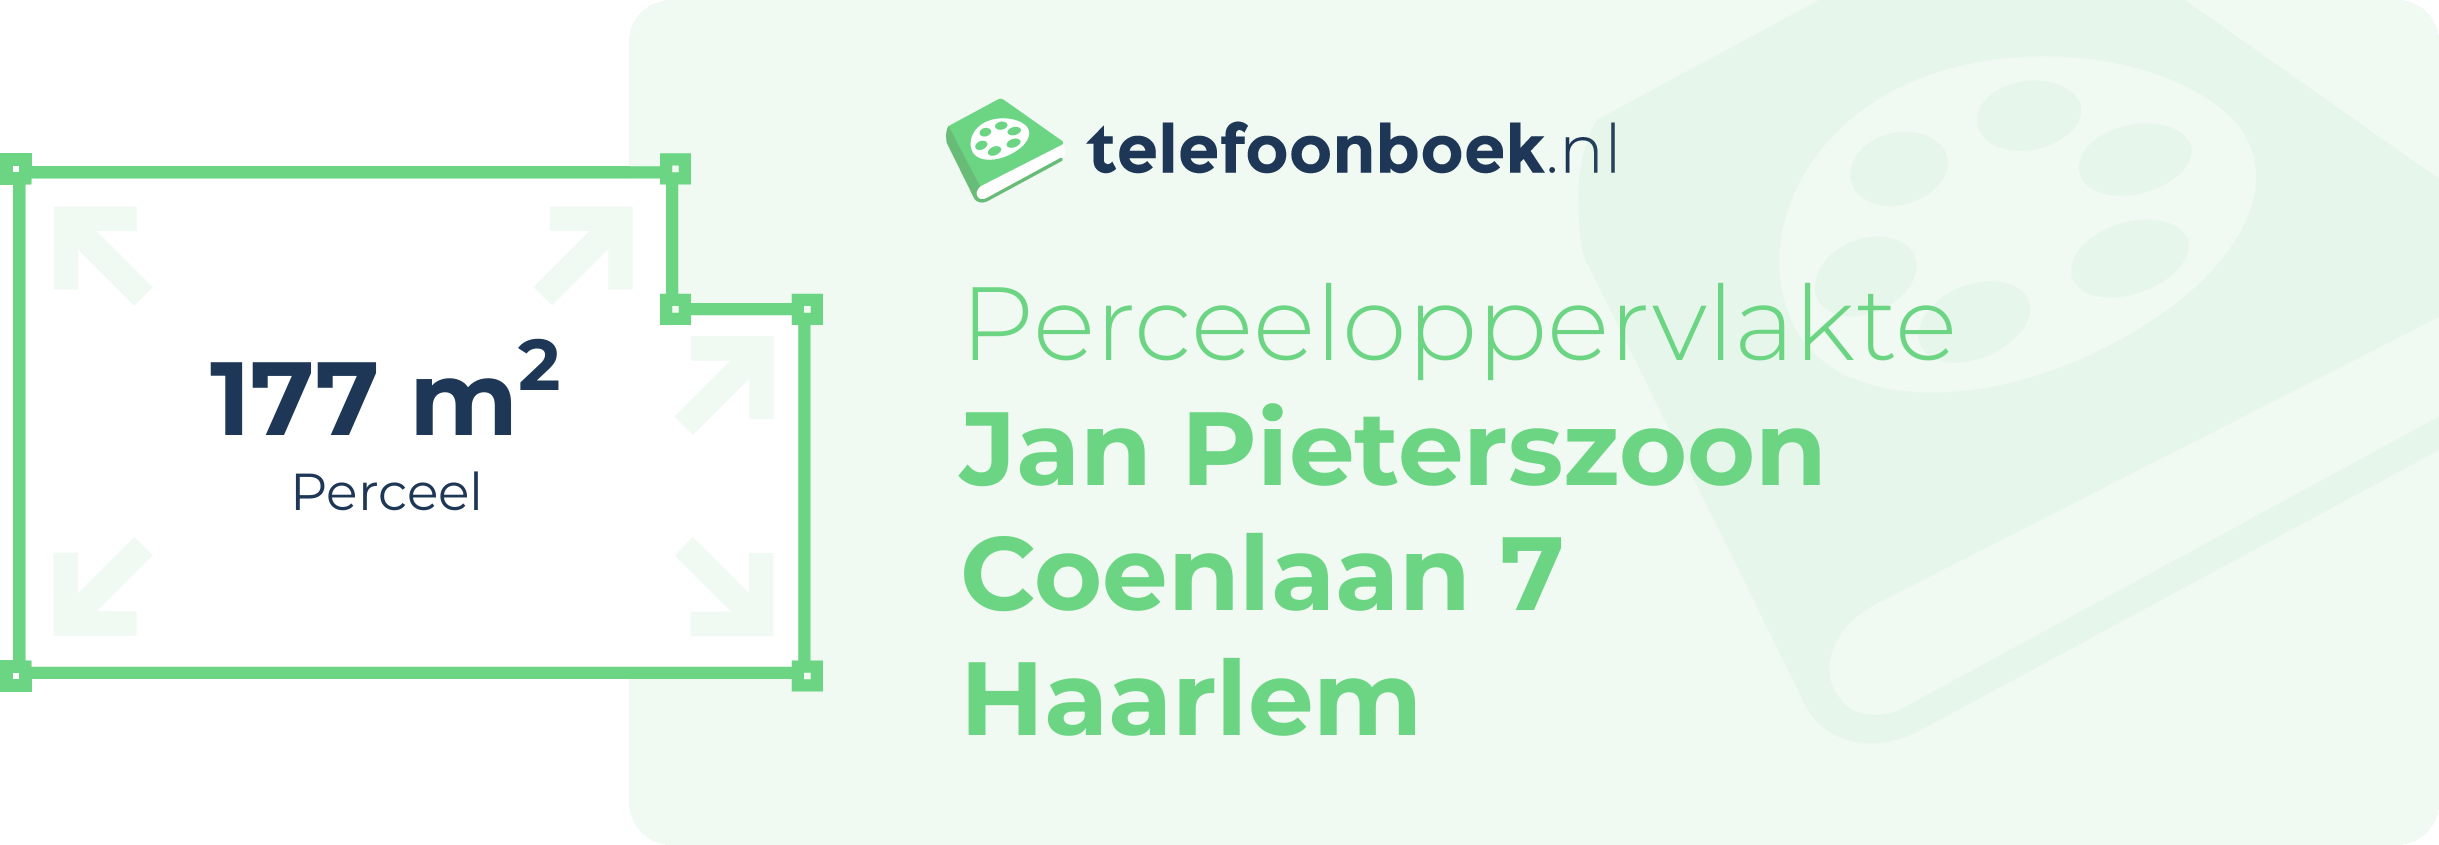 Perceeloppervlakte Jan Pieterszoon Coenlaan 7 Haarlem